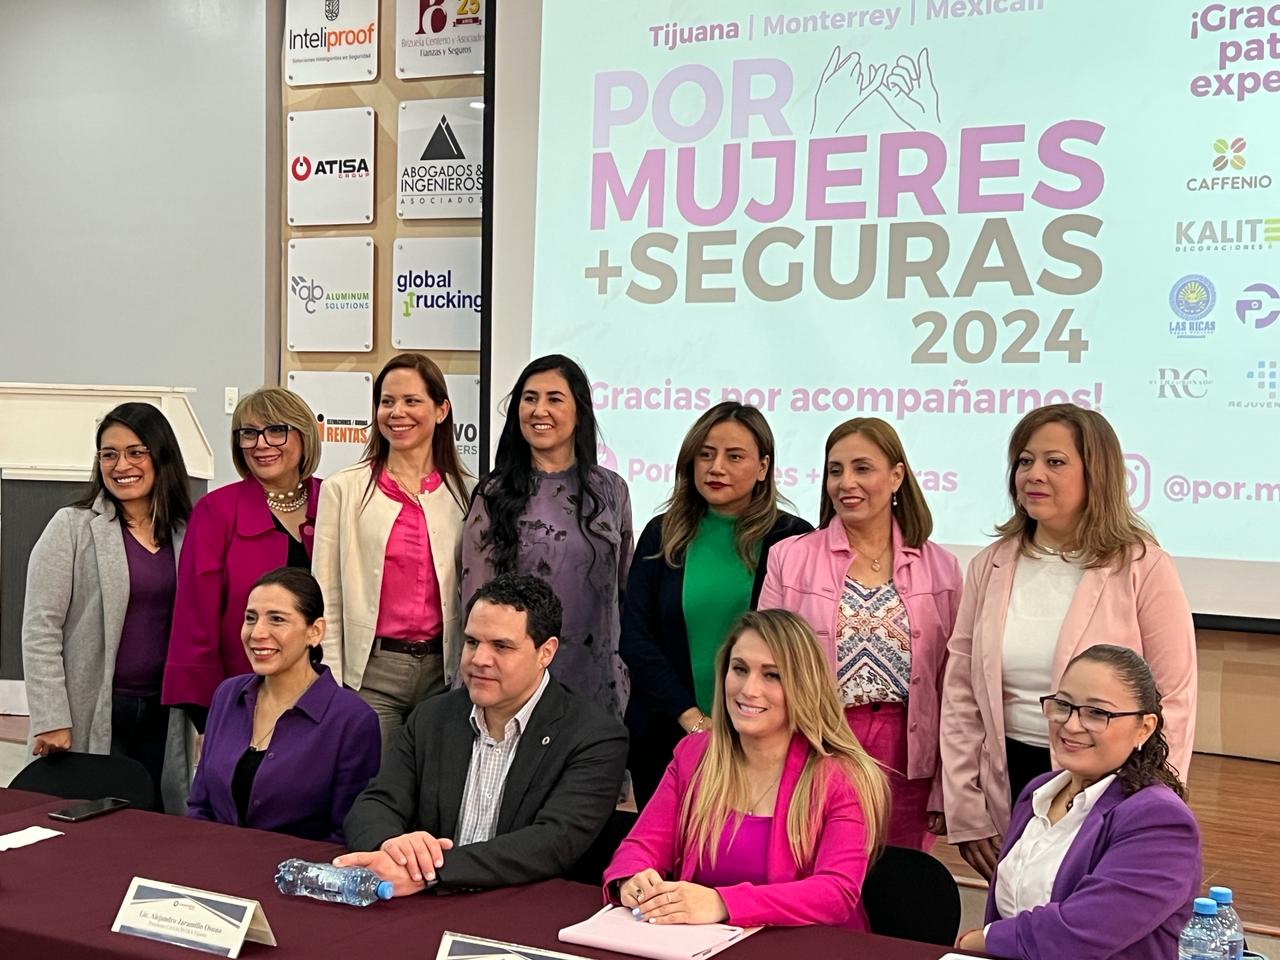 Ofrecerán taller de defensa personal a 100 mujeres en Tijuana